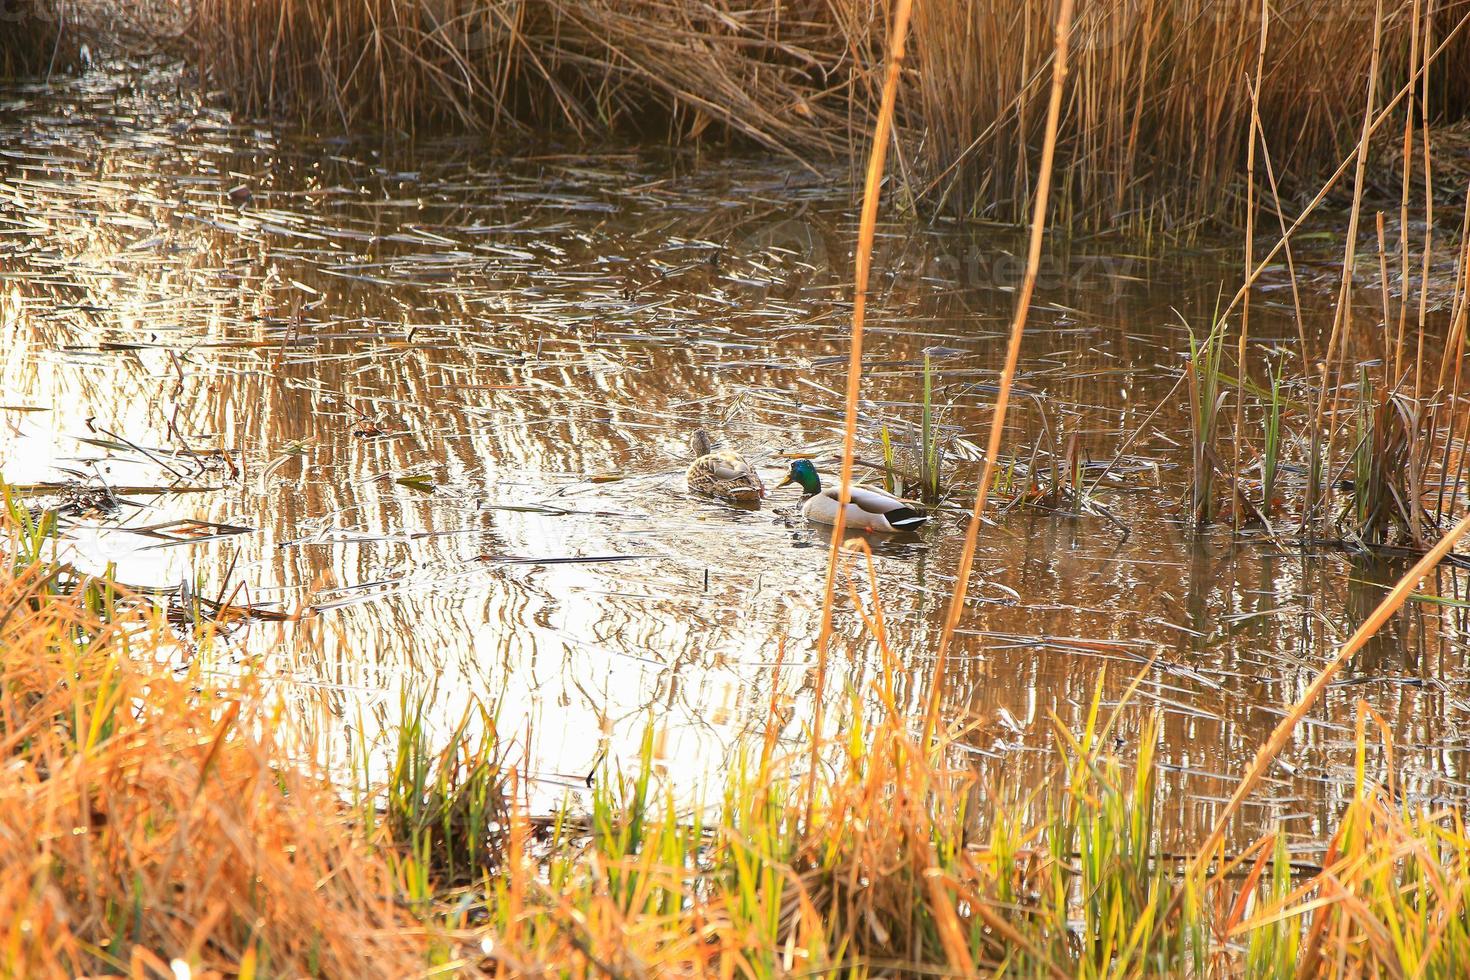 par de patos selvagens na água em um pântano no outono foto